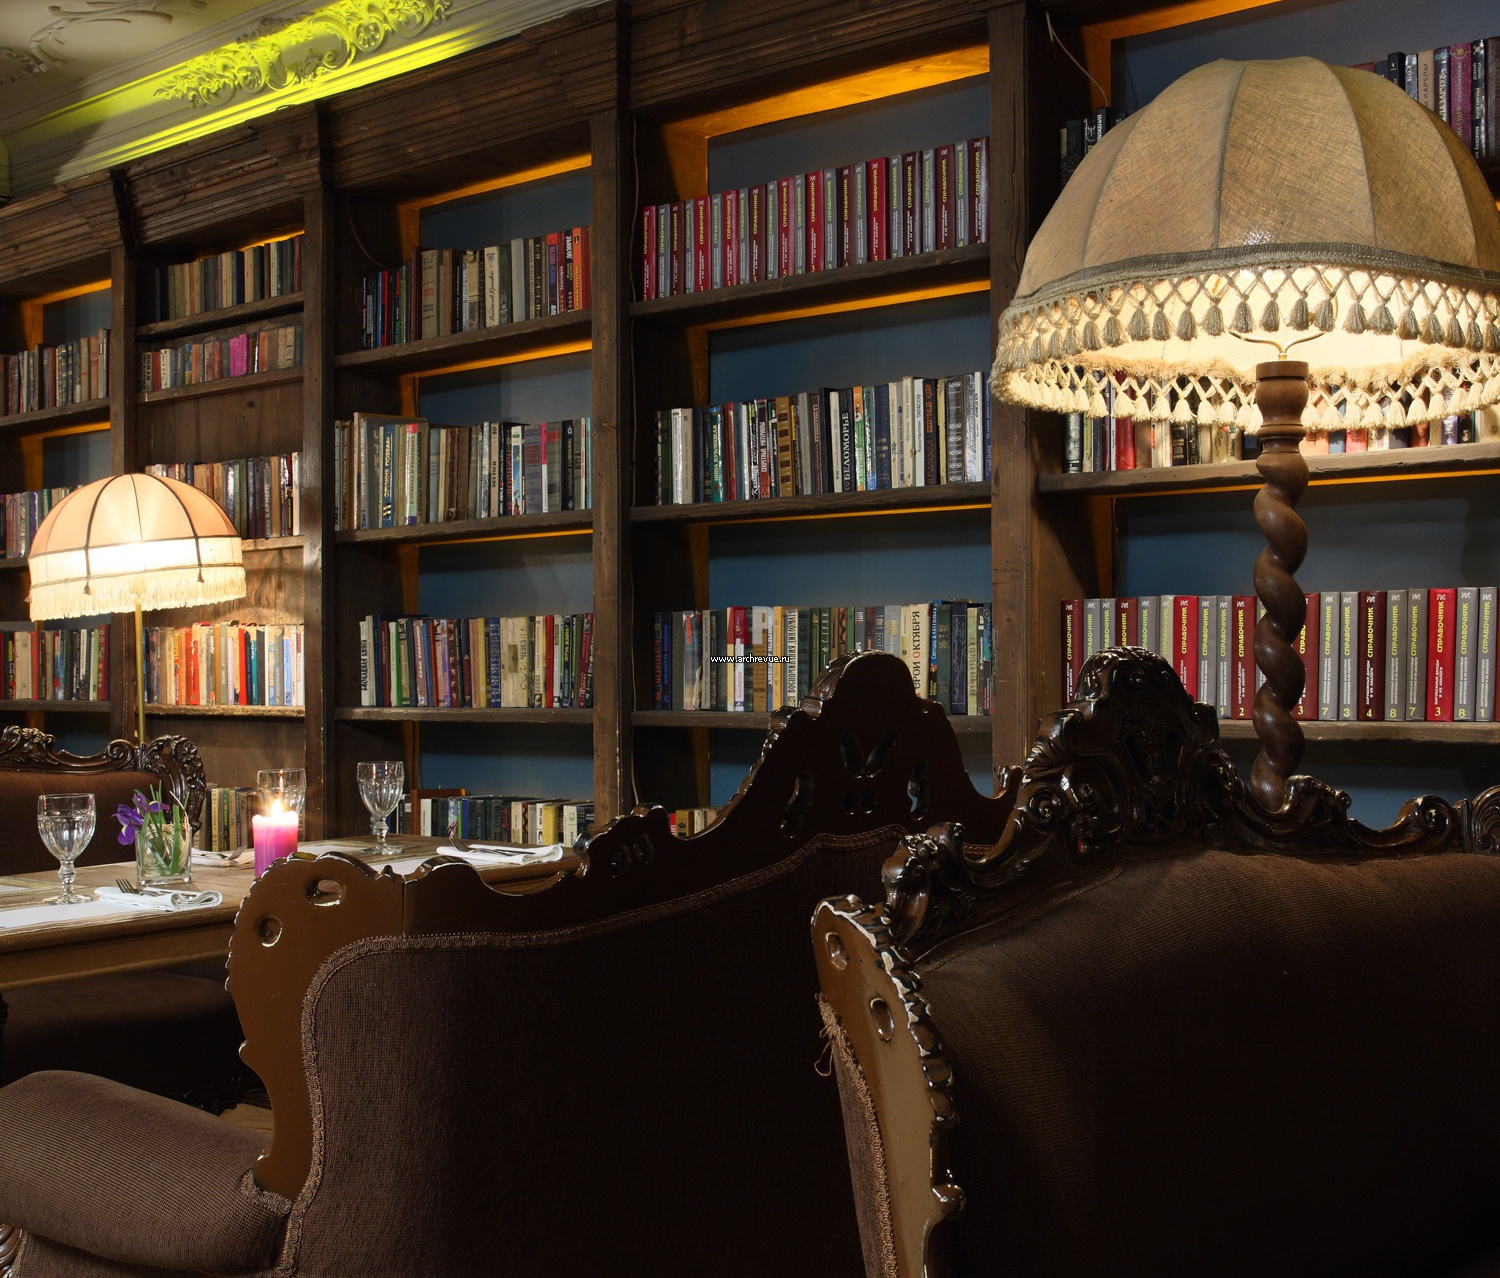 Сайт библиотеки кафе. Интерьер в стиле библиотеки. Кафе с книжными полками. Кафе в стиле библиотеки. Ресторан в стиле библиотеки.